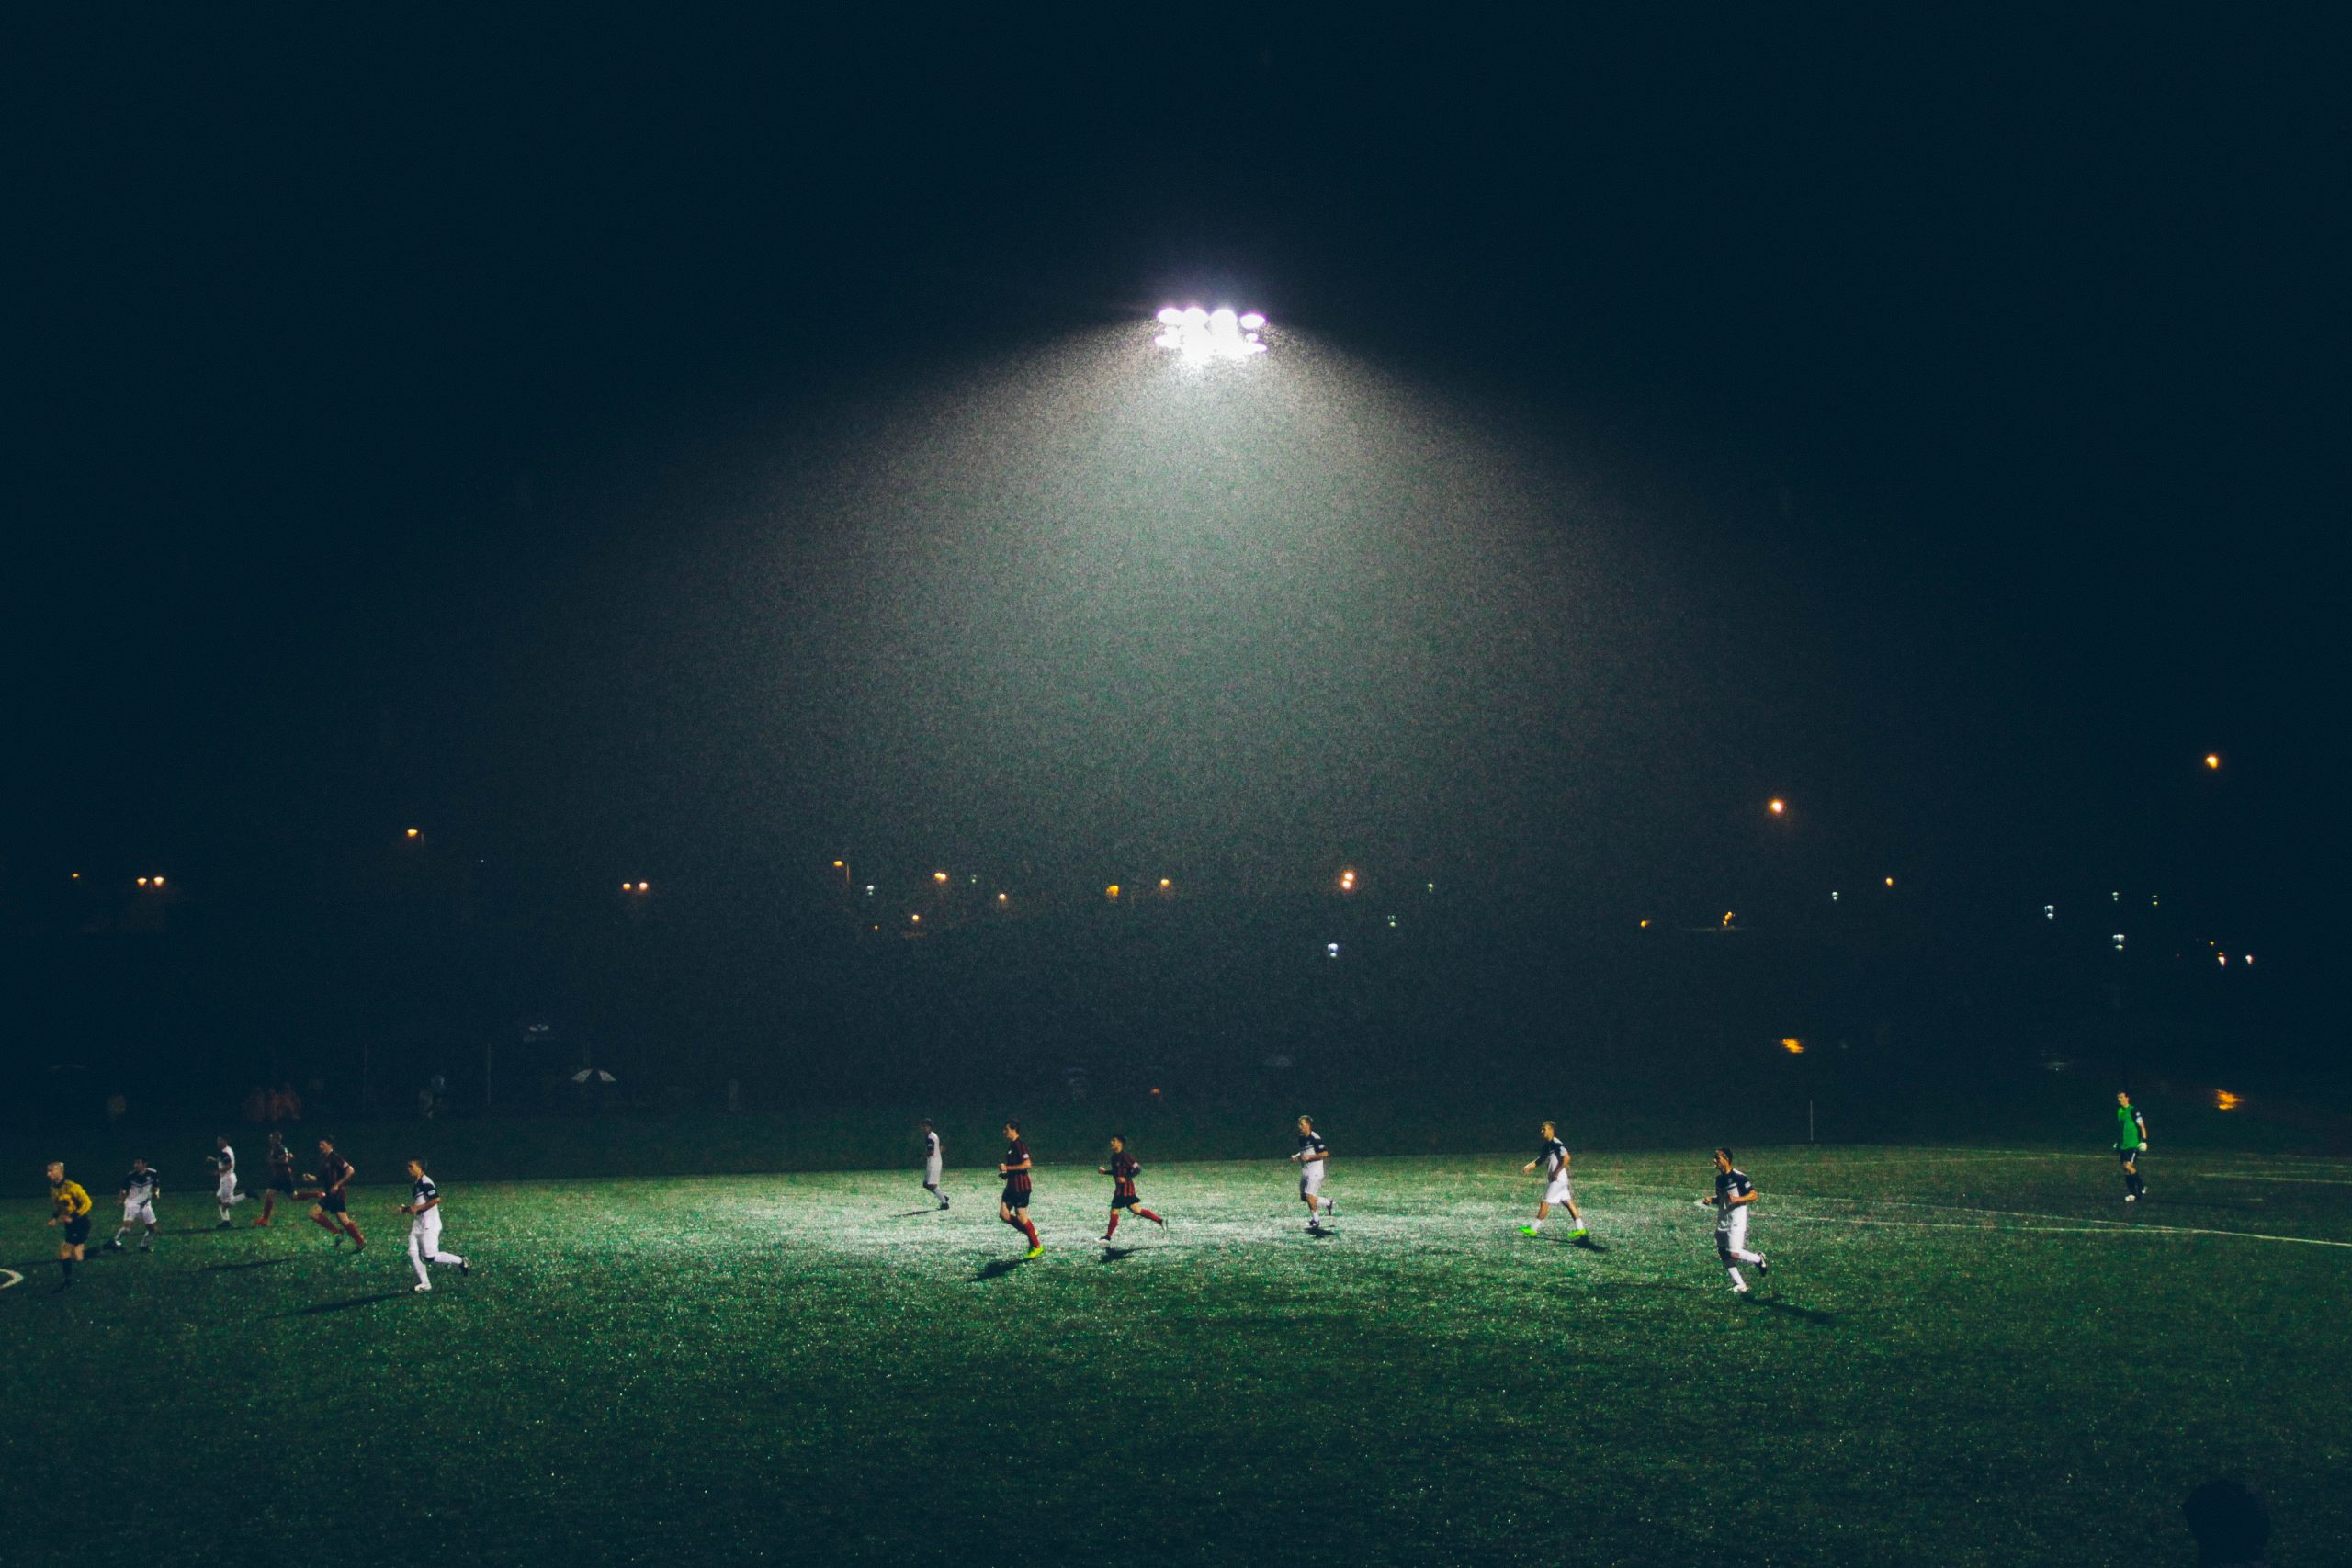 FootballR - NFL - Die großen Anwärter der Meisterschaft kämpfen unter den strahlenden Lichtern eines Fußballplatzes.